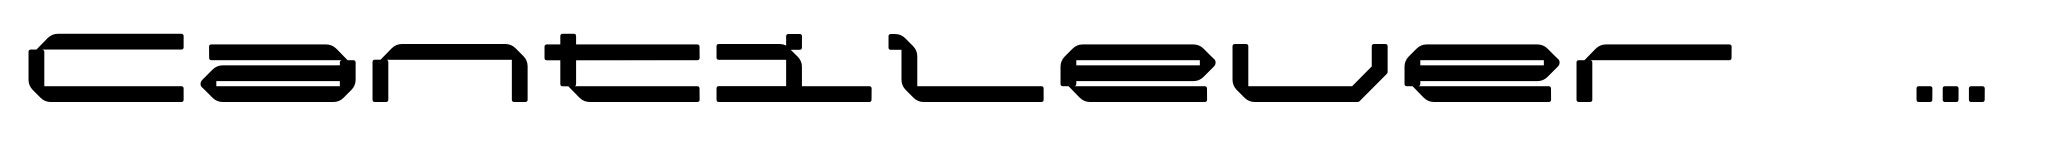 Cantilever Bold Semi Ex image